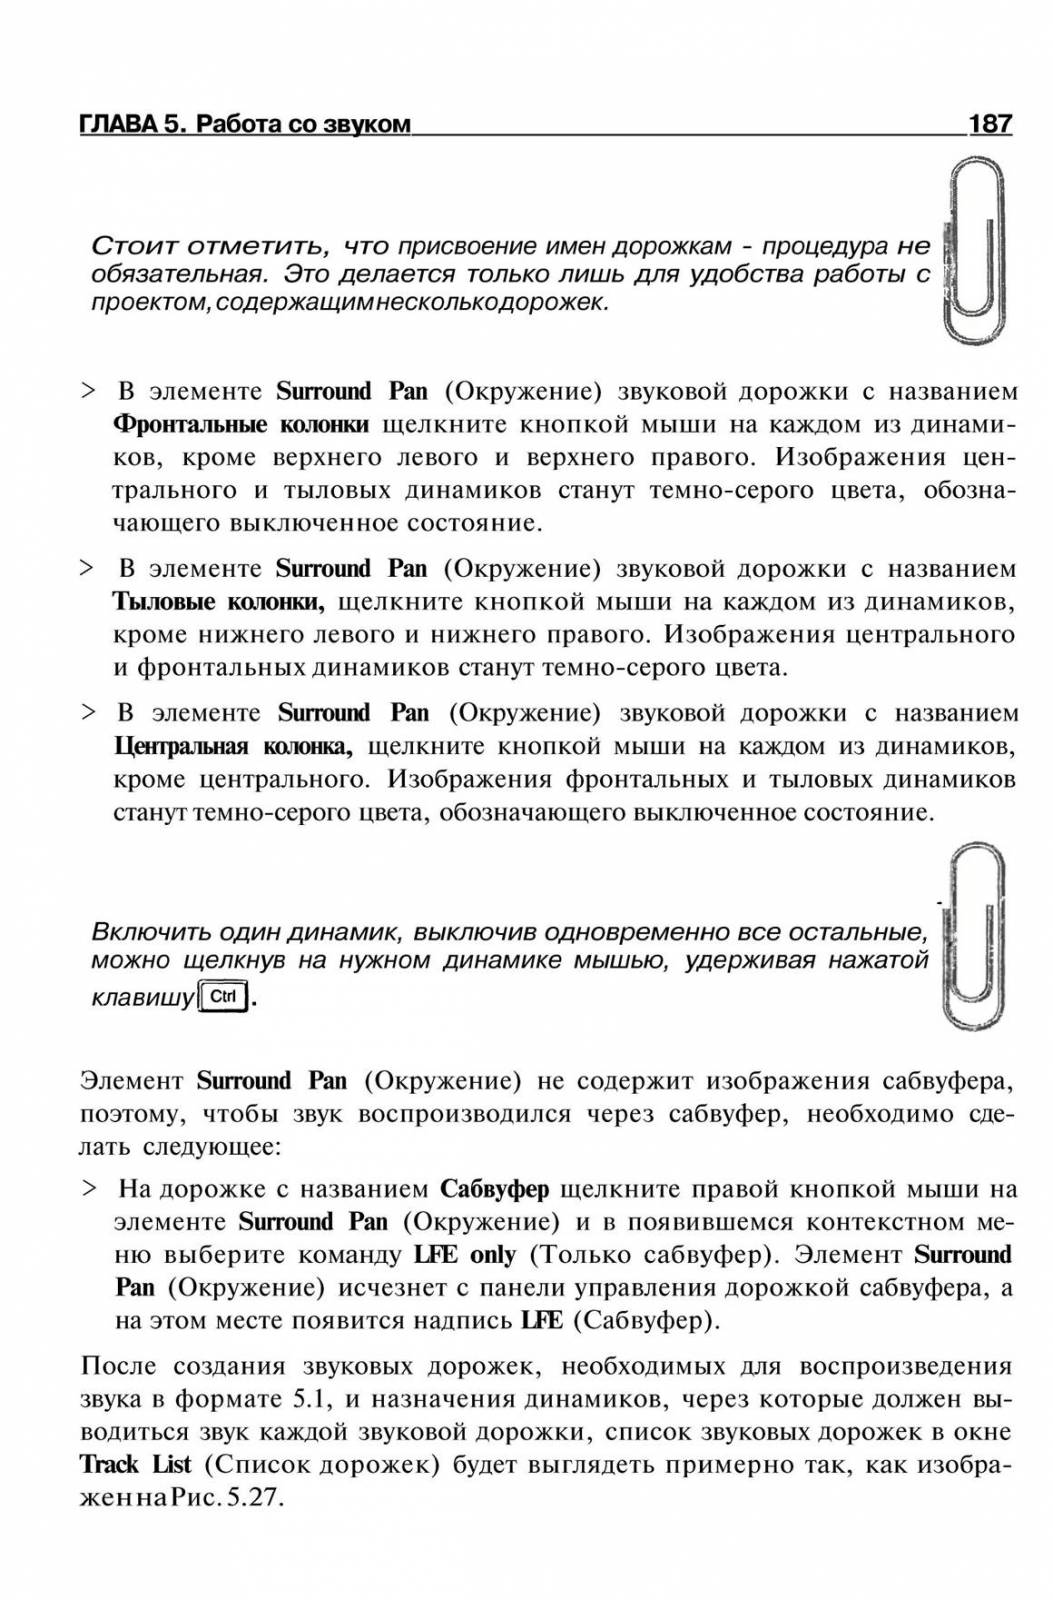 http://redaktori-uroki.3dn.ru/_ph/14/658117003.jpg